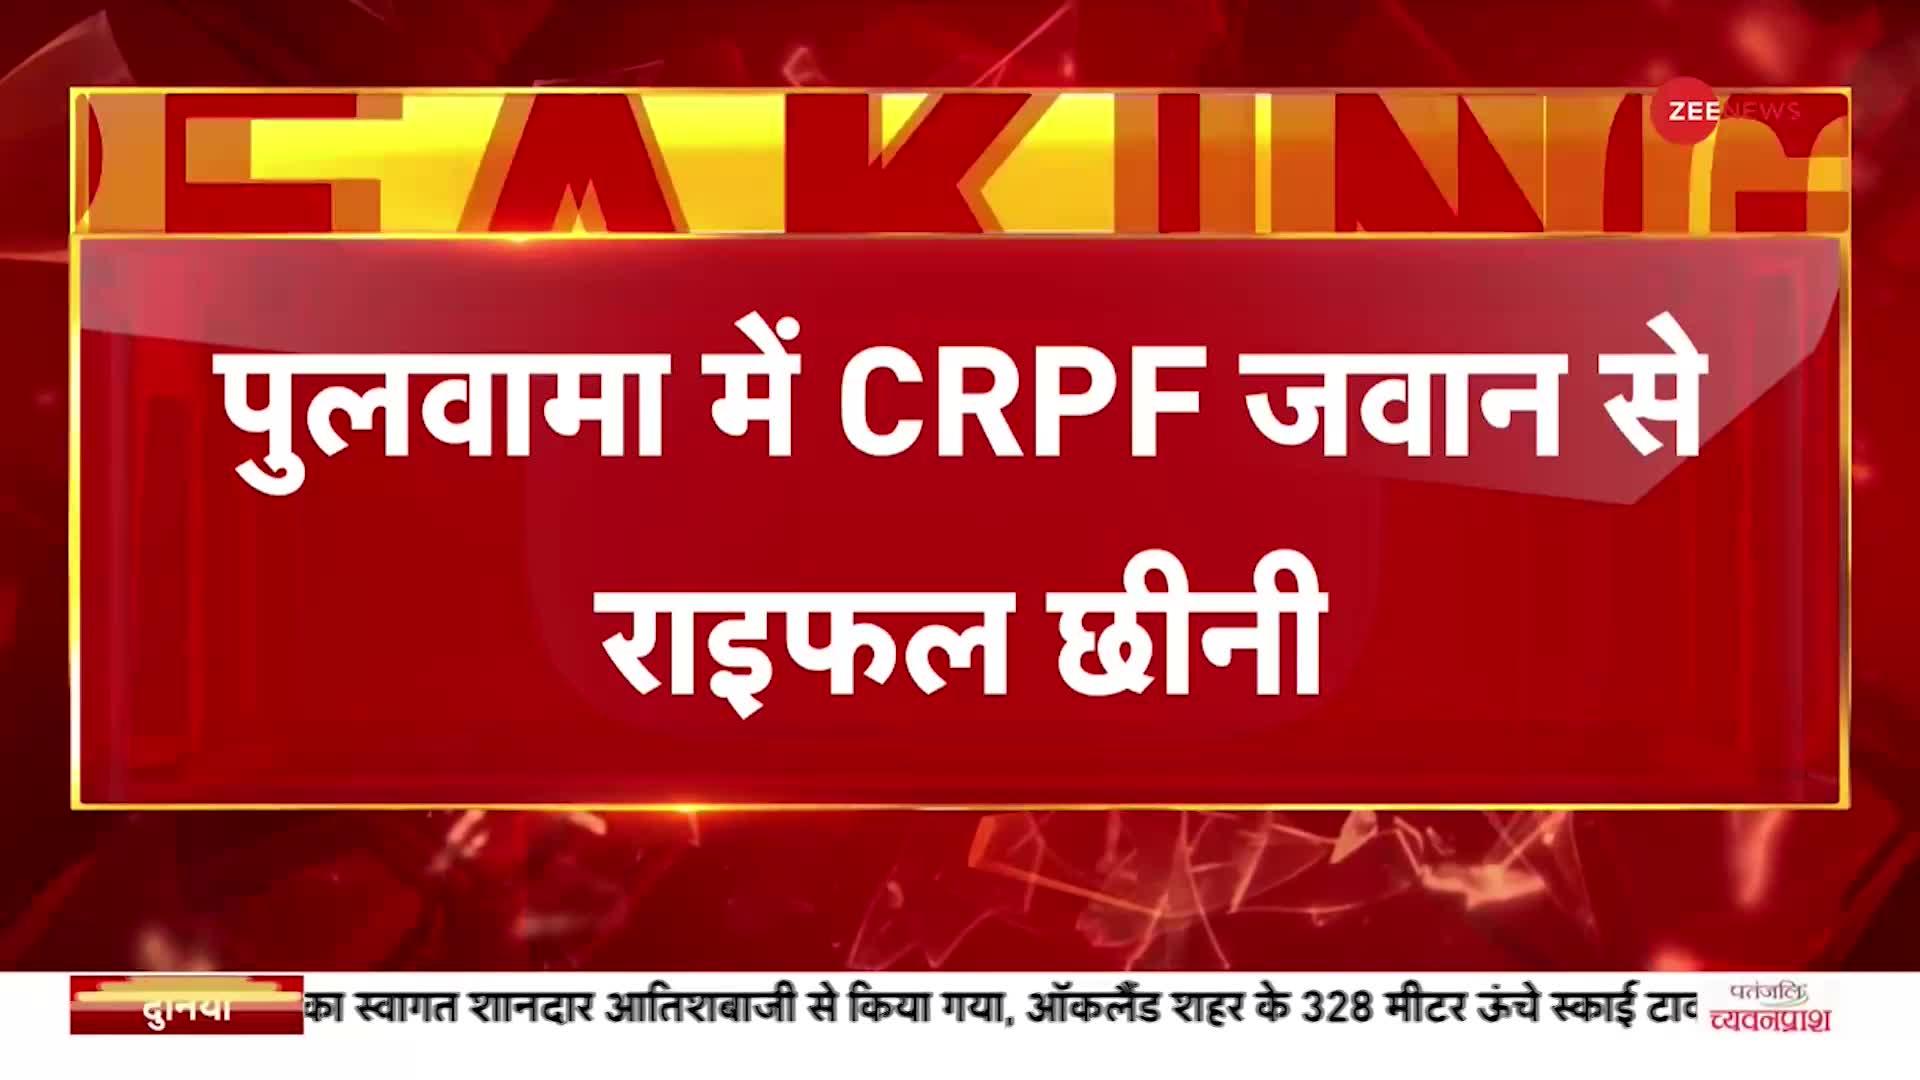 Breaking News: पुलवामा में CRPF जवान से संदिग्ध आतंकियों ने छीनी राइफल, तलाश में जुटे सुरक्षाबल